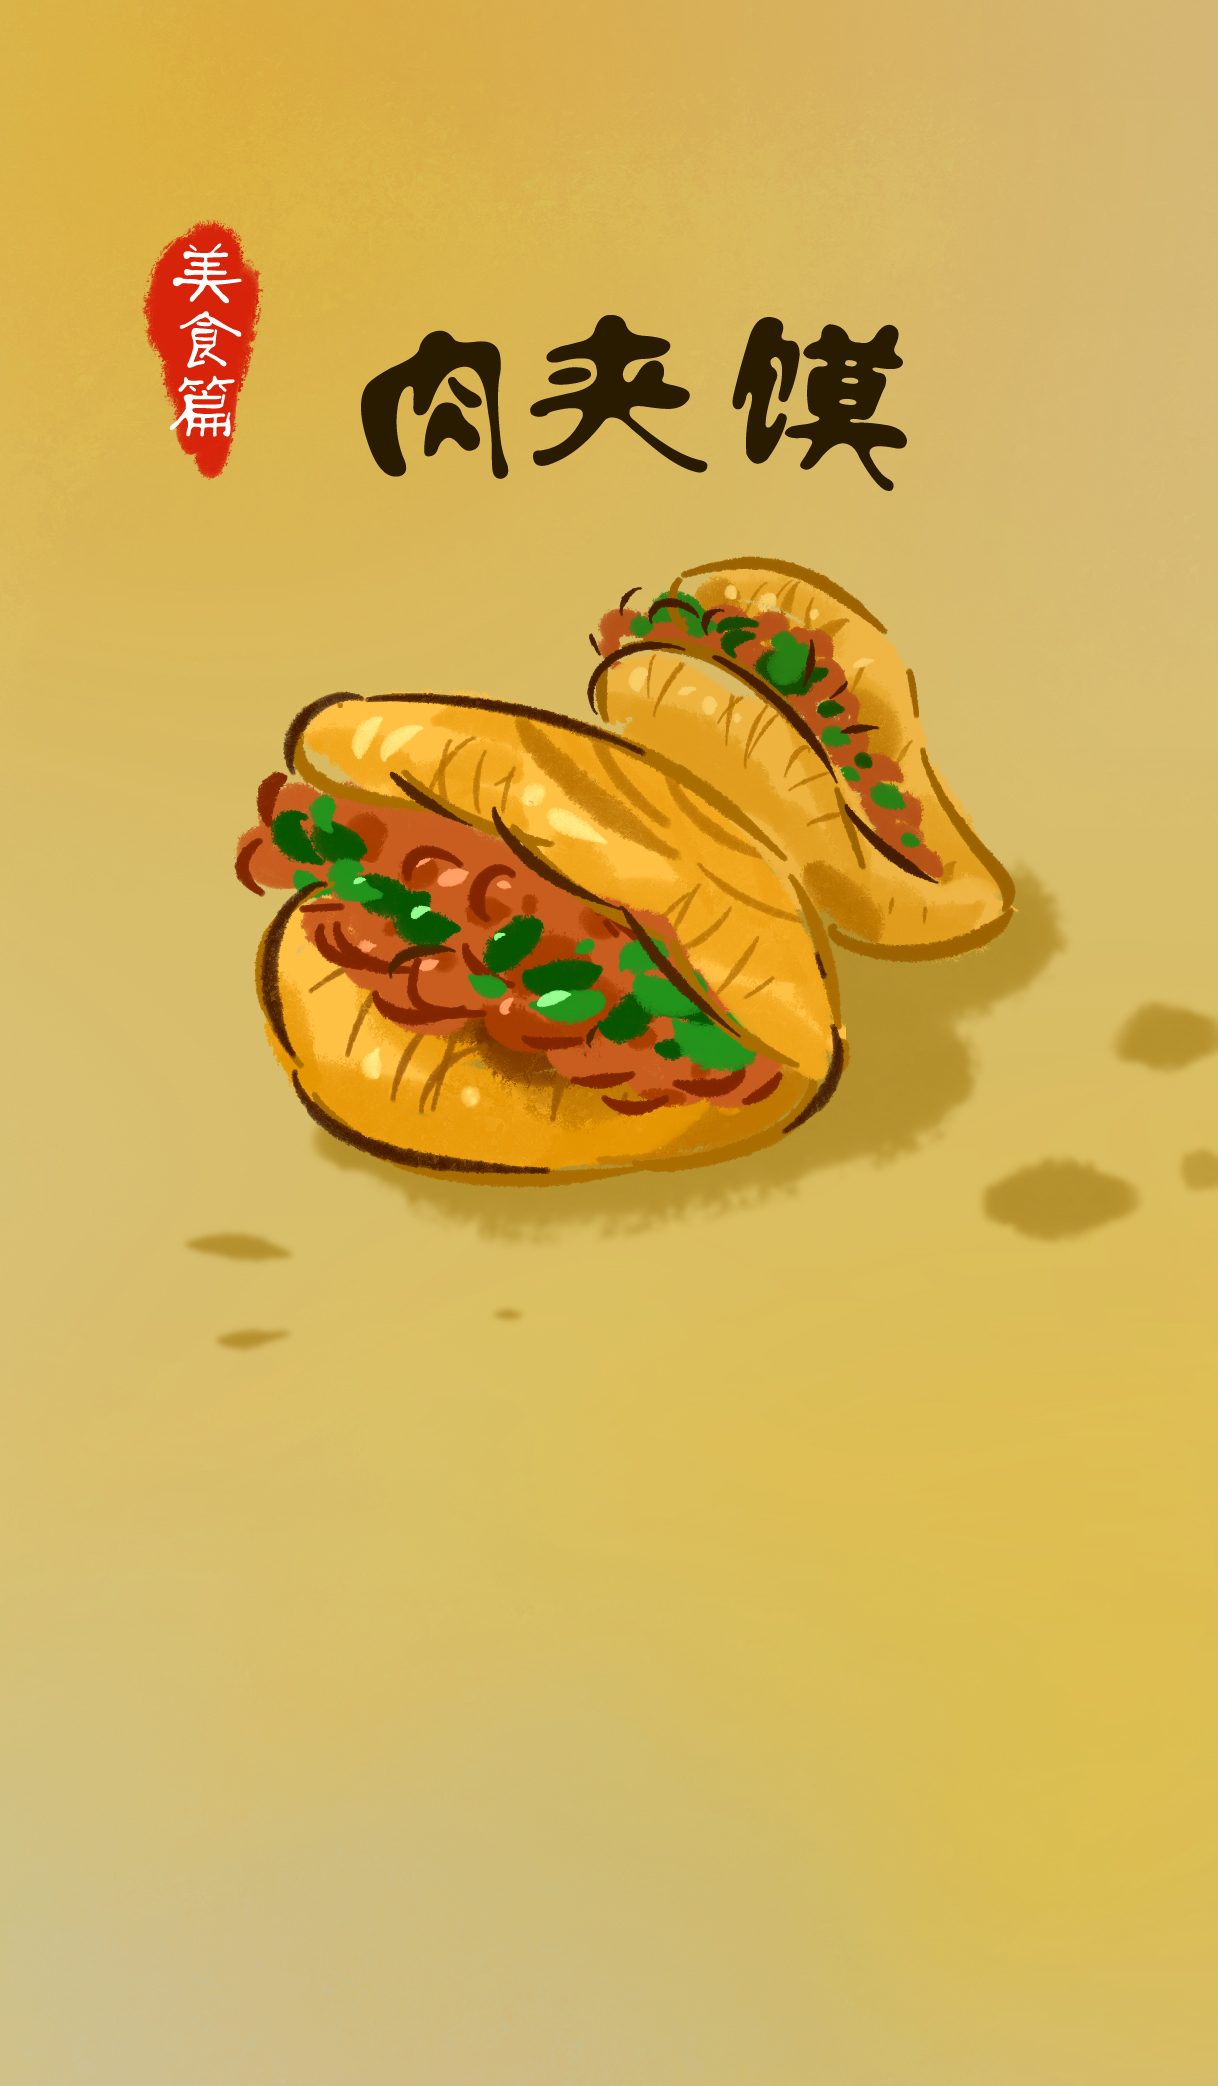 肉夹馍卡通图案图片